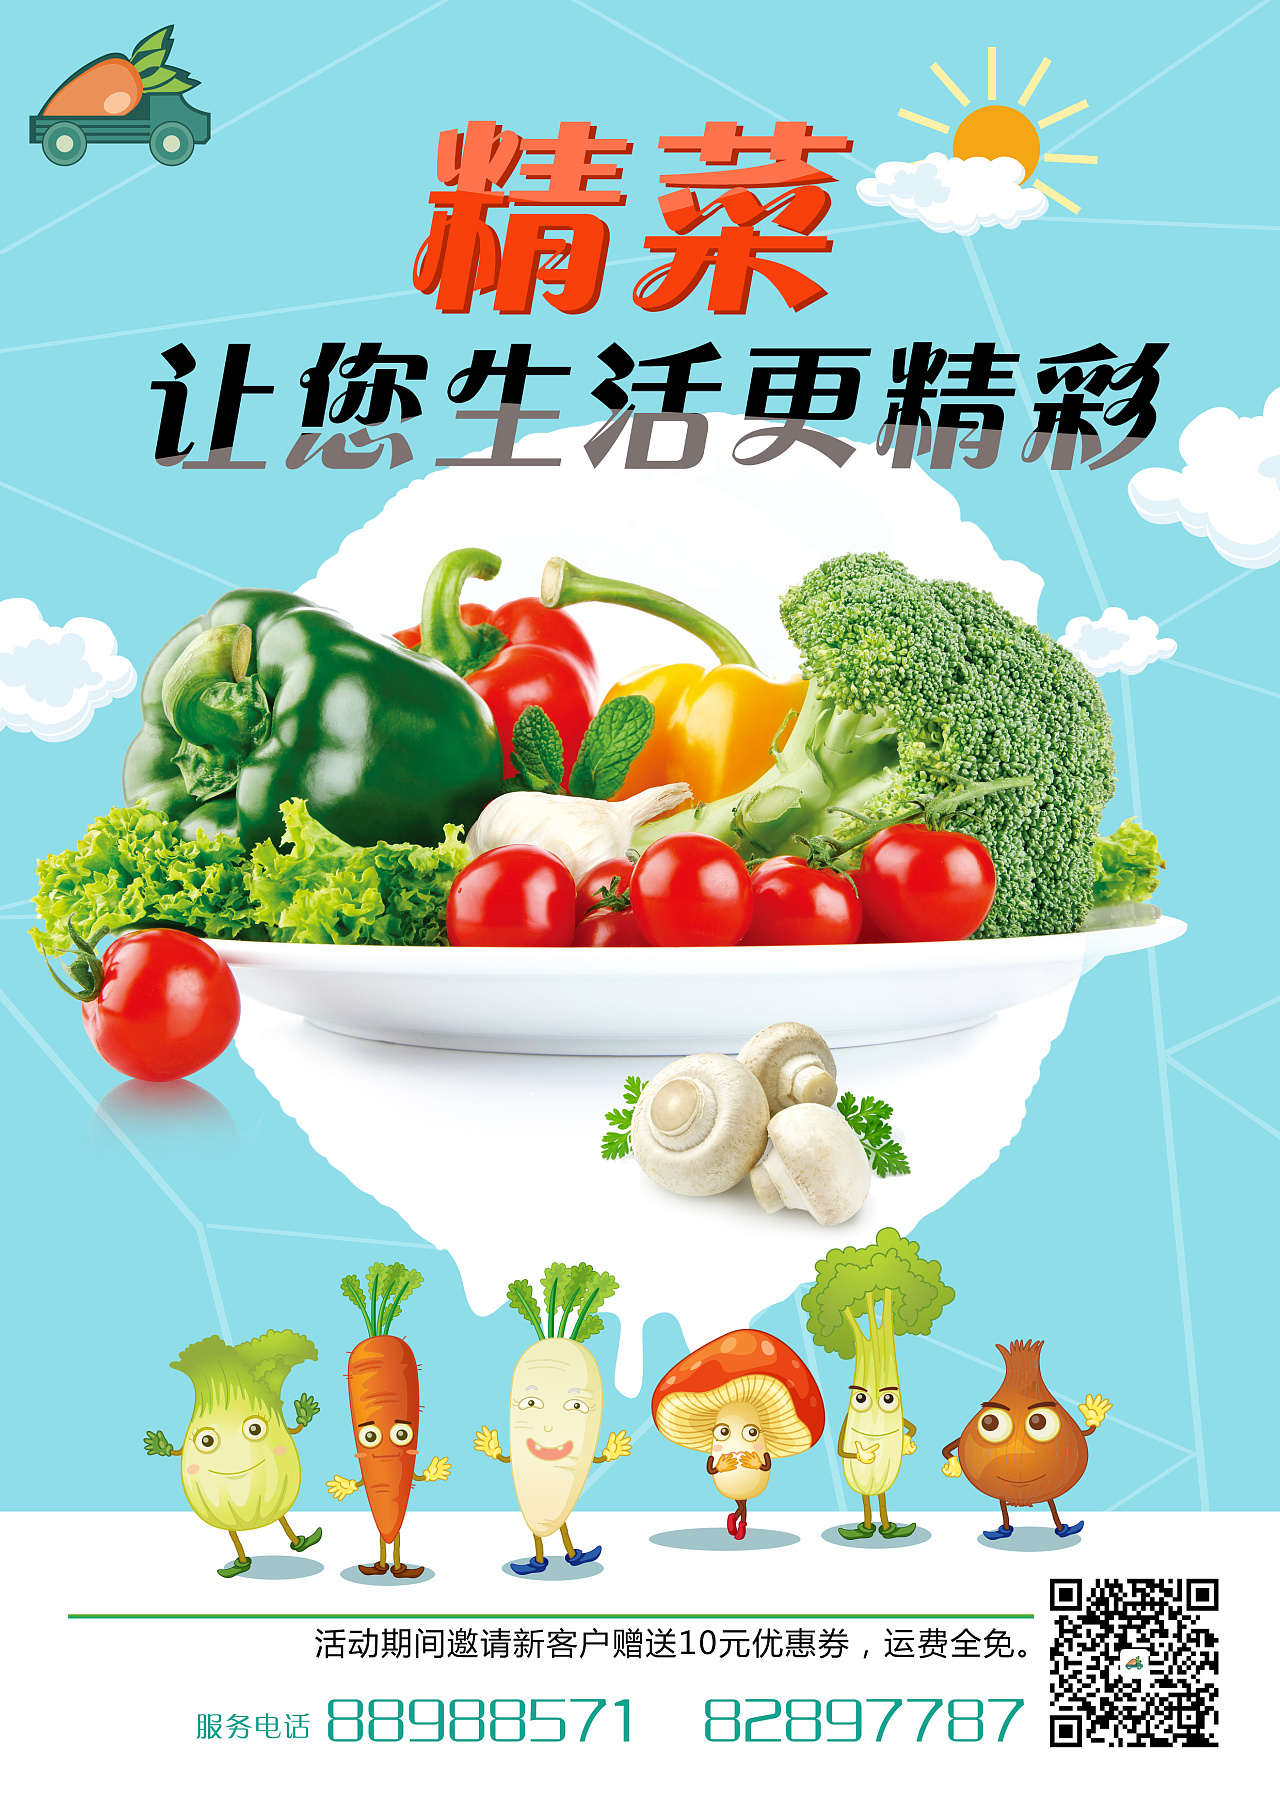 蔬菜广告语宣传语图片